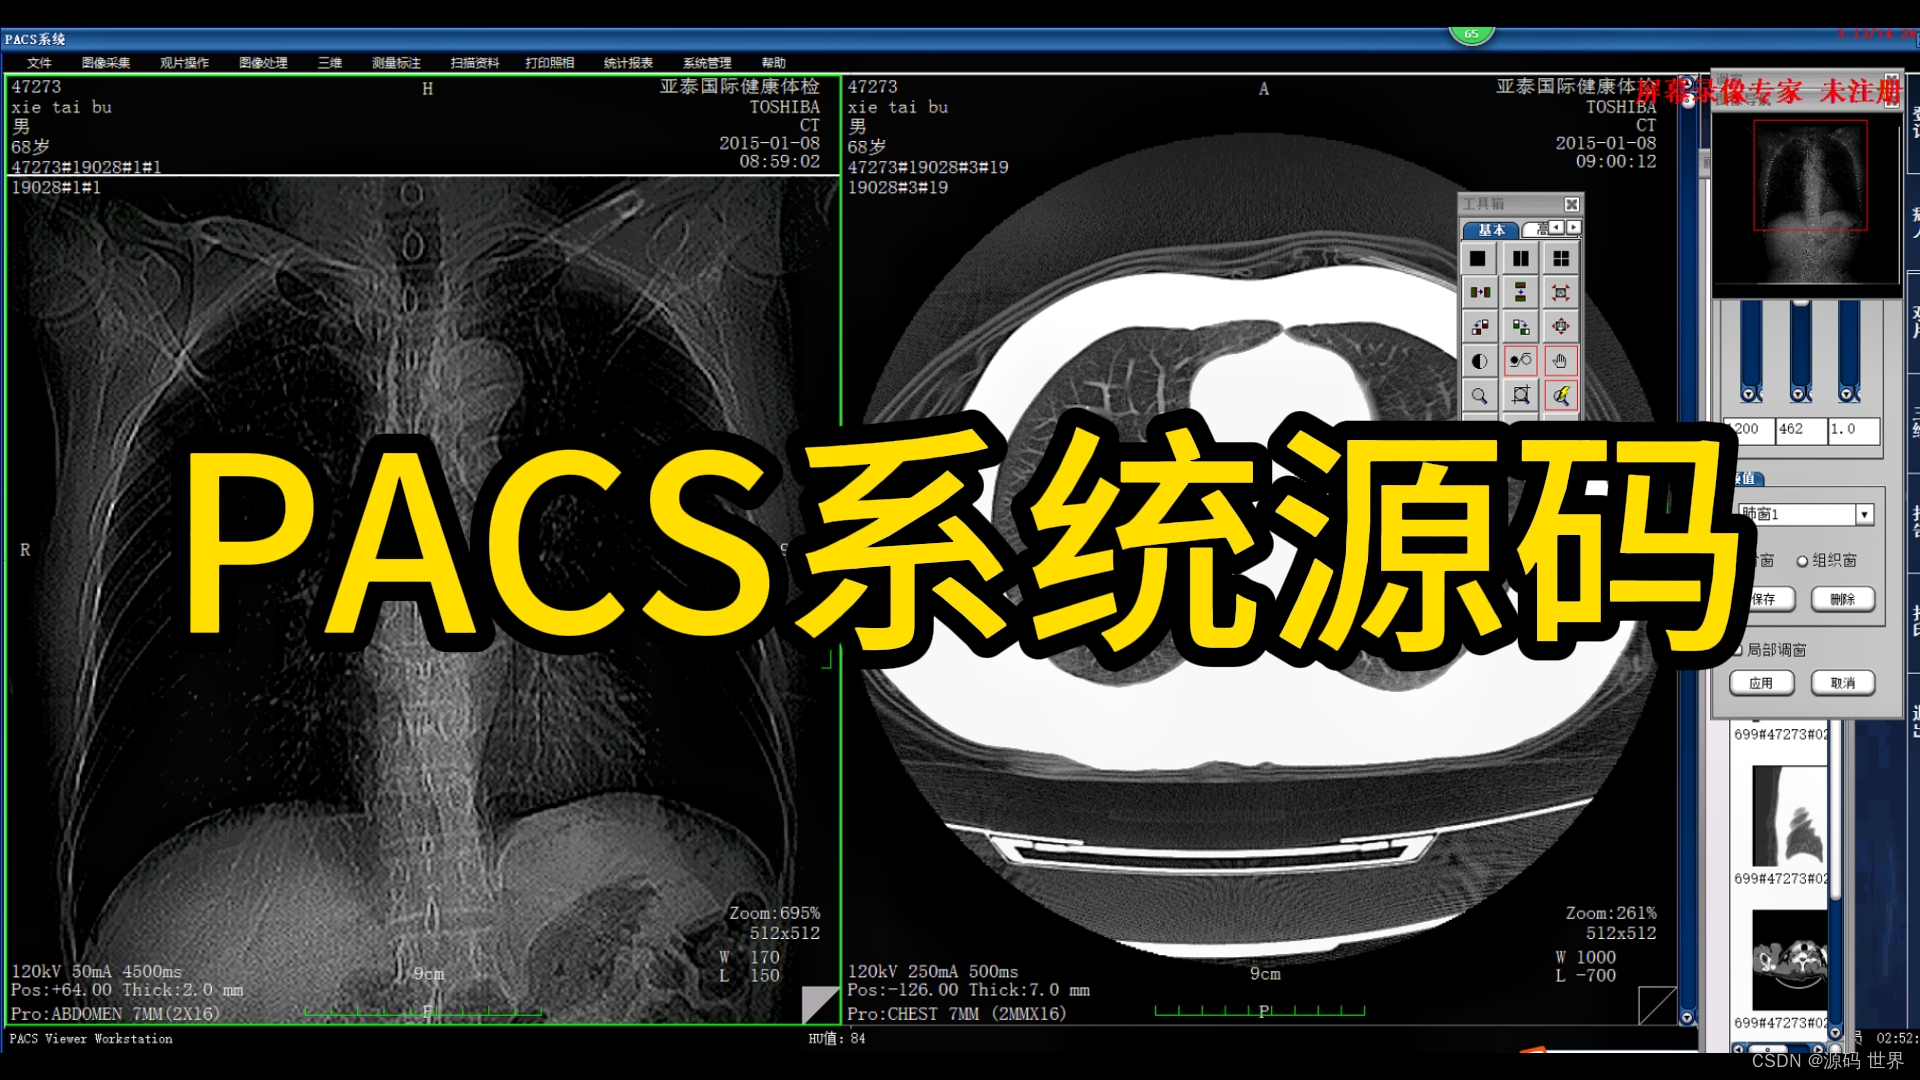 （源码）一套医学影像PACS系统源码 医院系统源码 提供数据接收、图像处理、测量、保存、管理、远程医疗和系统参数设置等功能